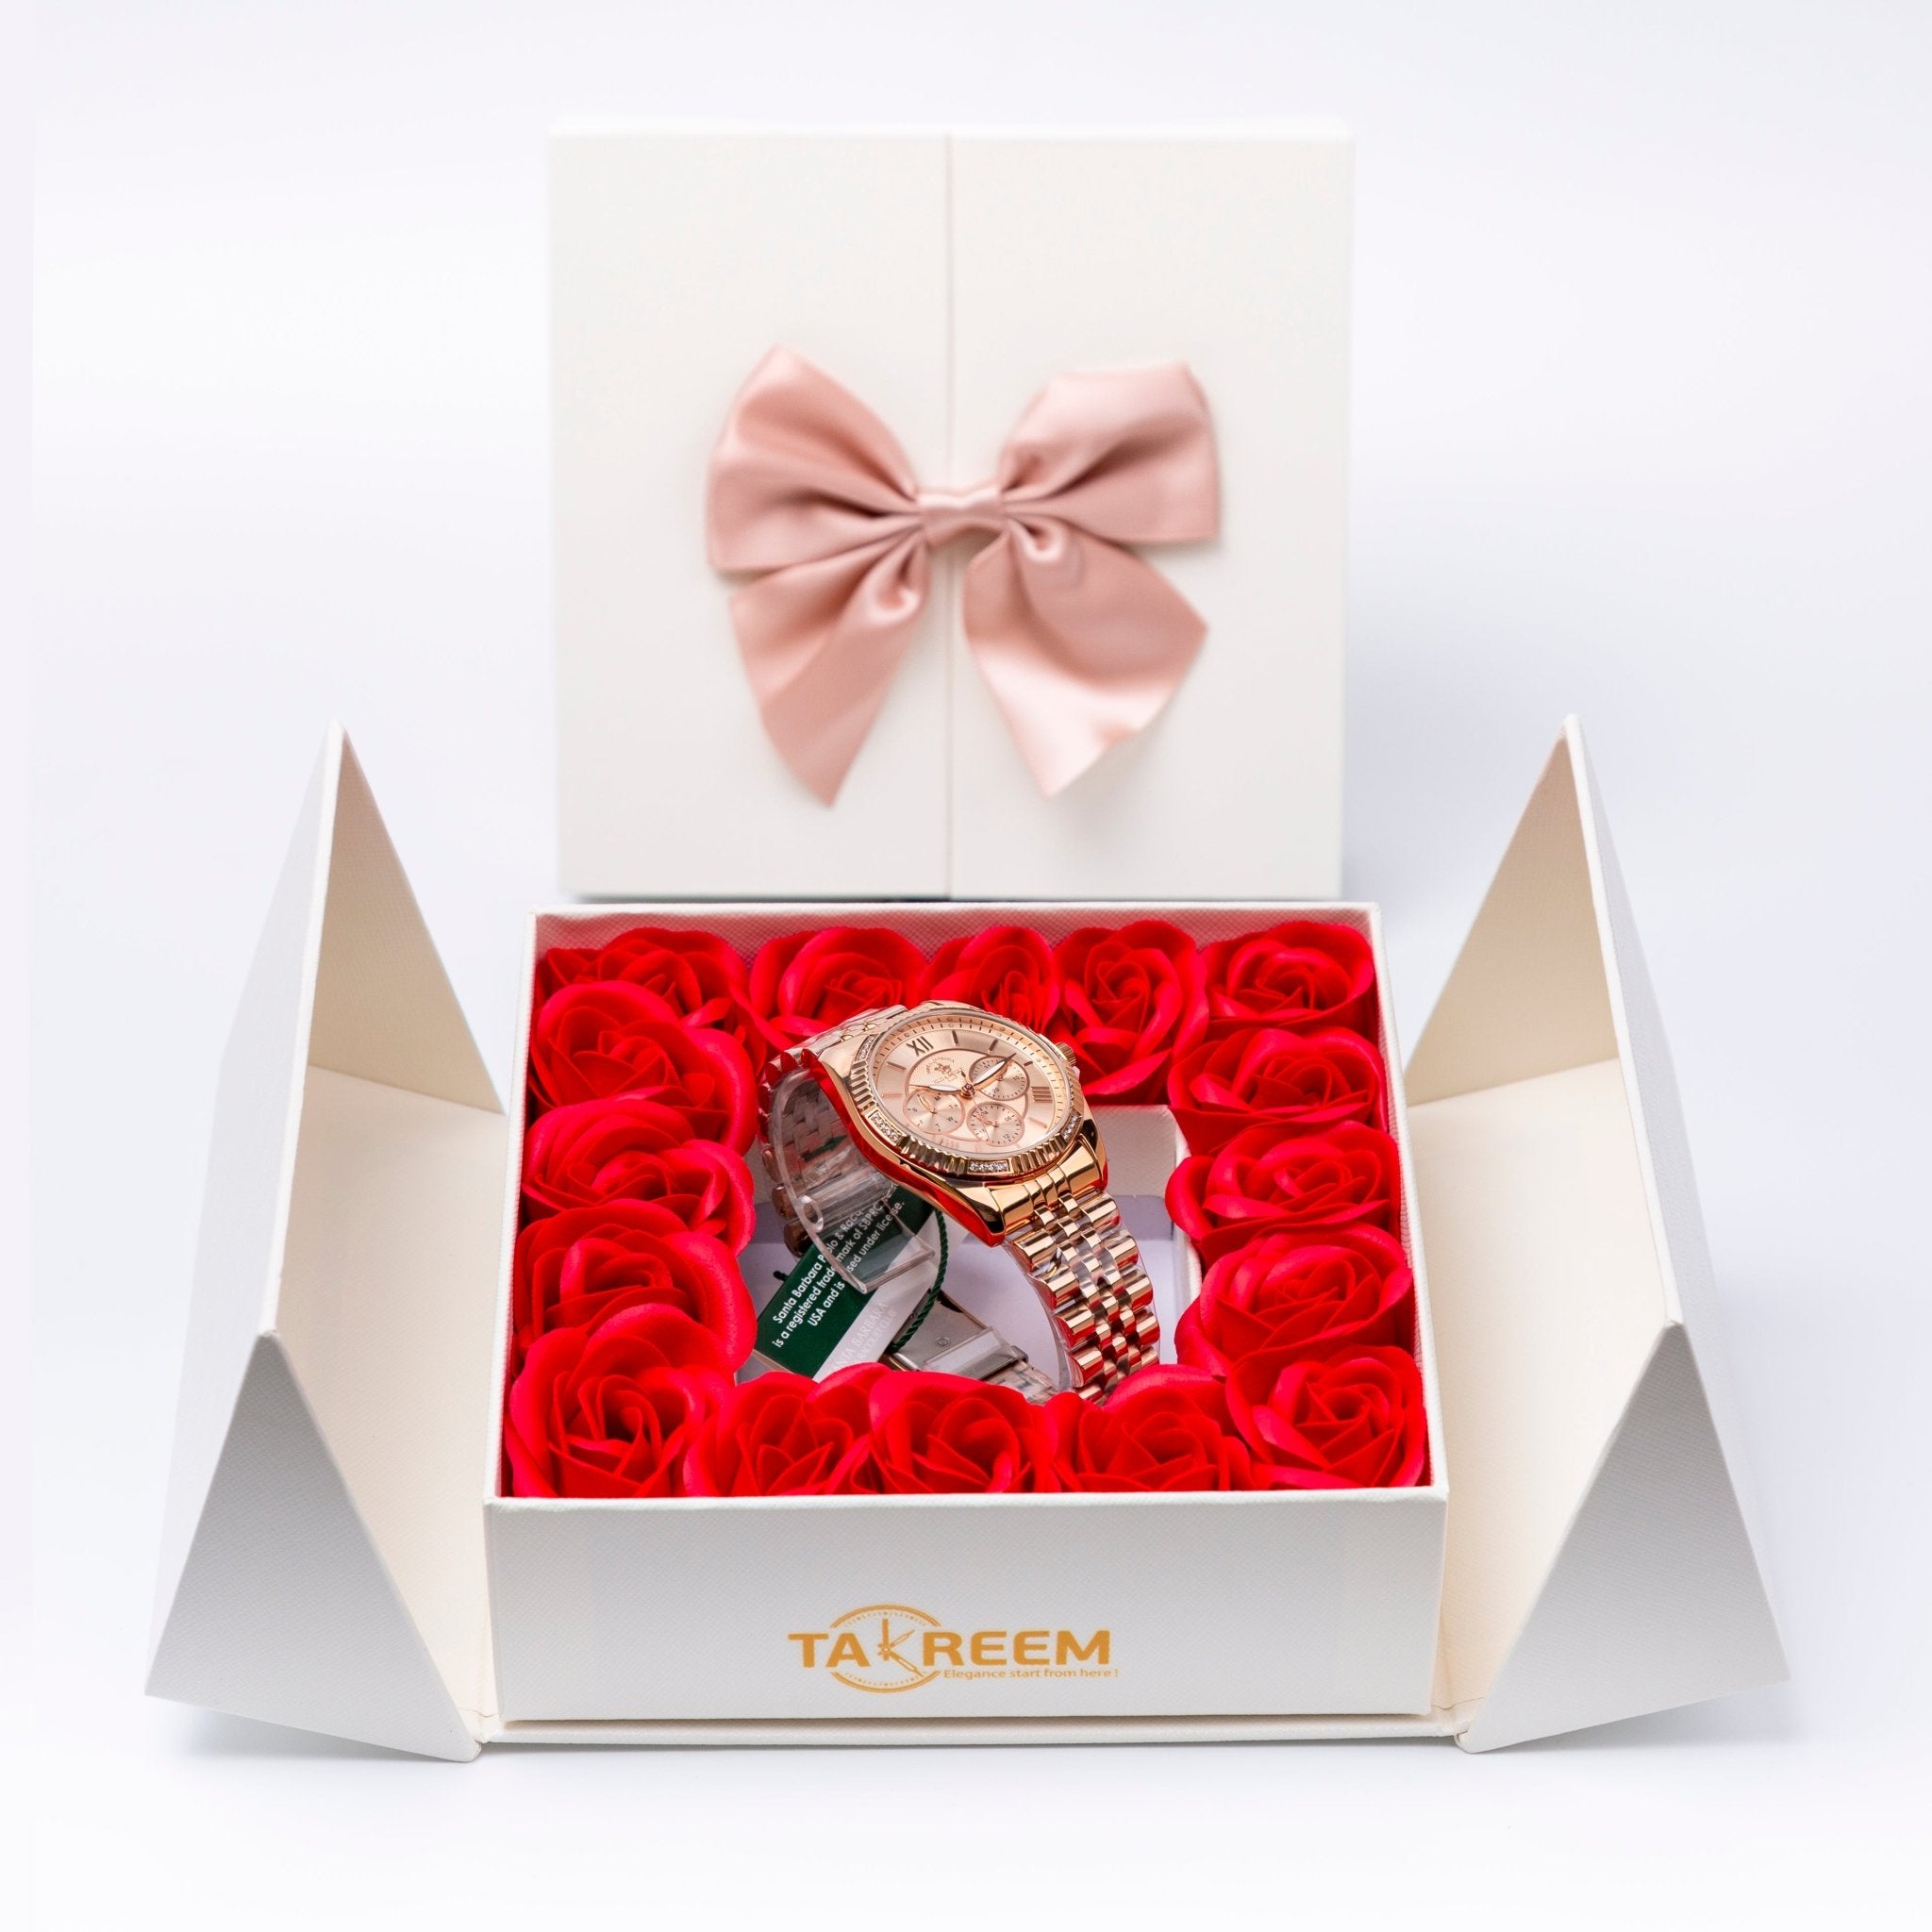 Flower Box - Gift For Women 24 - #shoFlower Box - Gift For Women 24p_name#Flower Box - Gift For Women 24Gift Boxes & TinsTakreemTakreem.joWomenWatchFlower Box - Gift For Women 24 - Takreem.jo